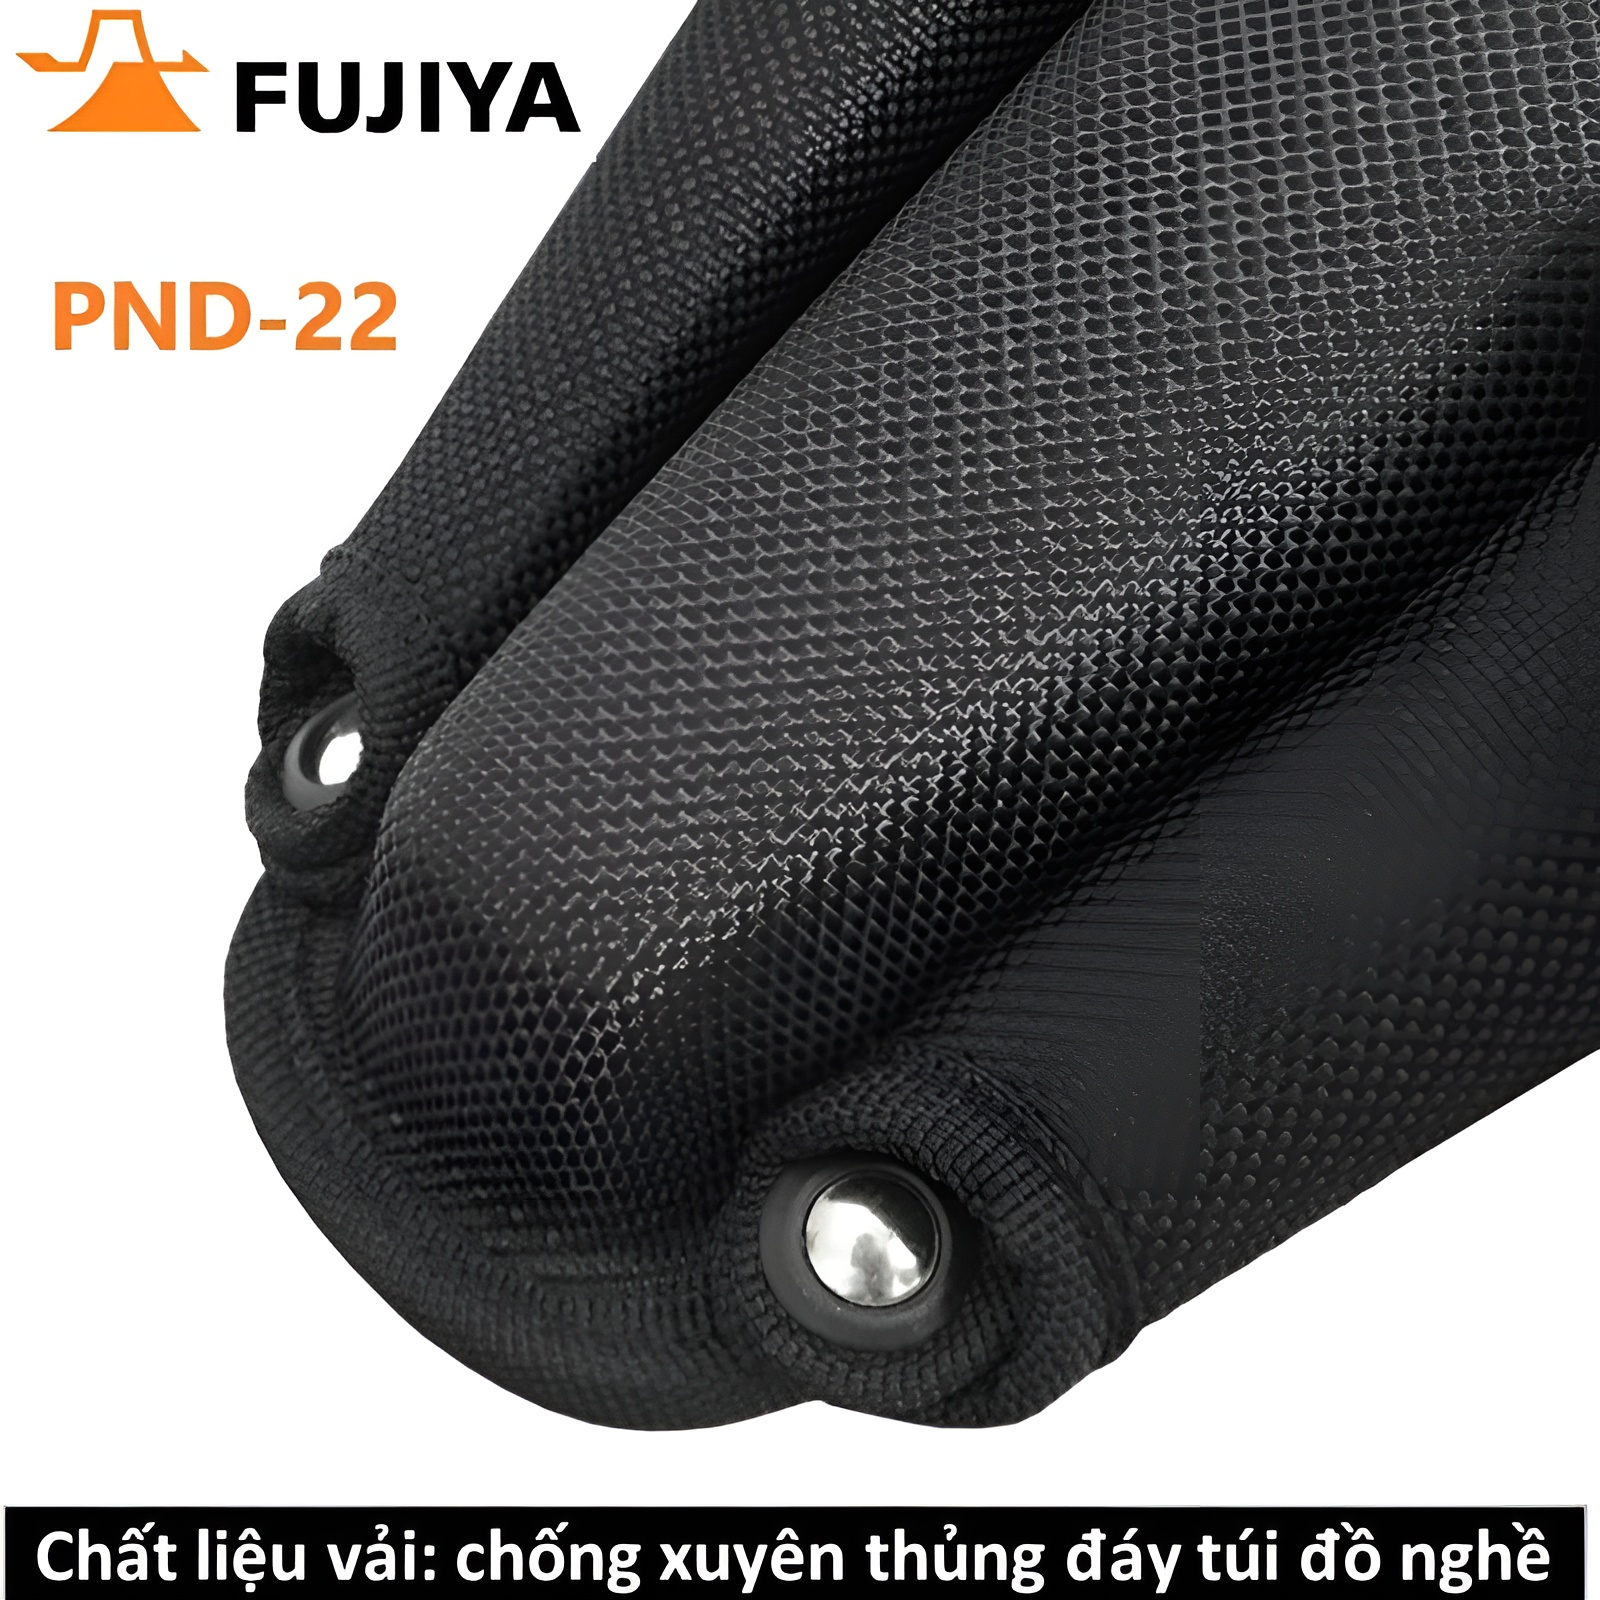 Hình ảnh 5 của mặt hàng Túi đồ nghề Fujiya PND-22